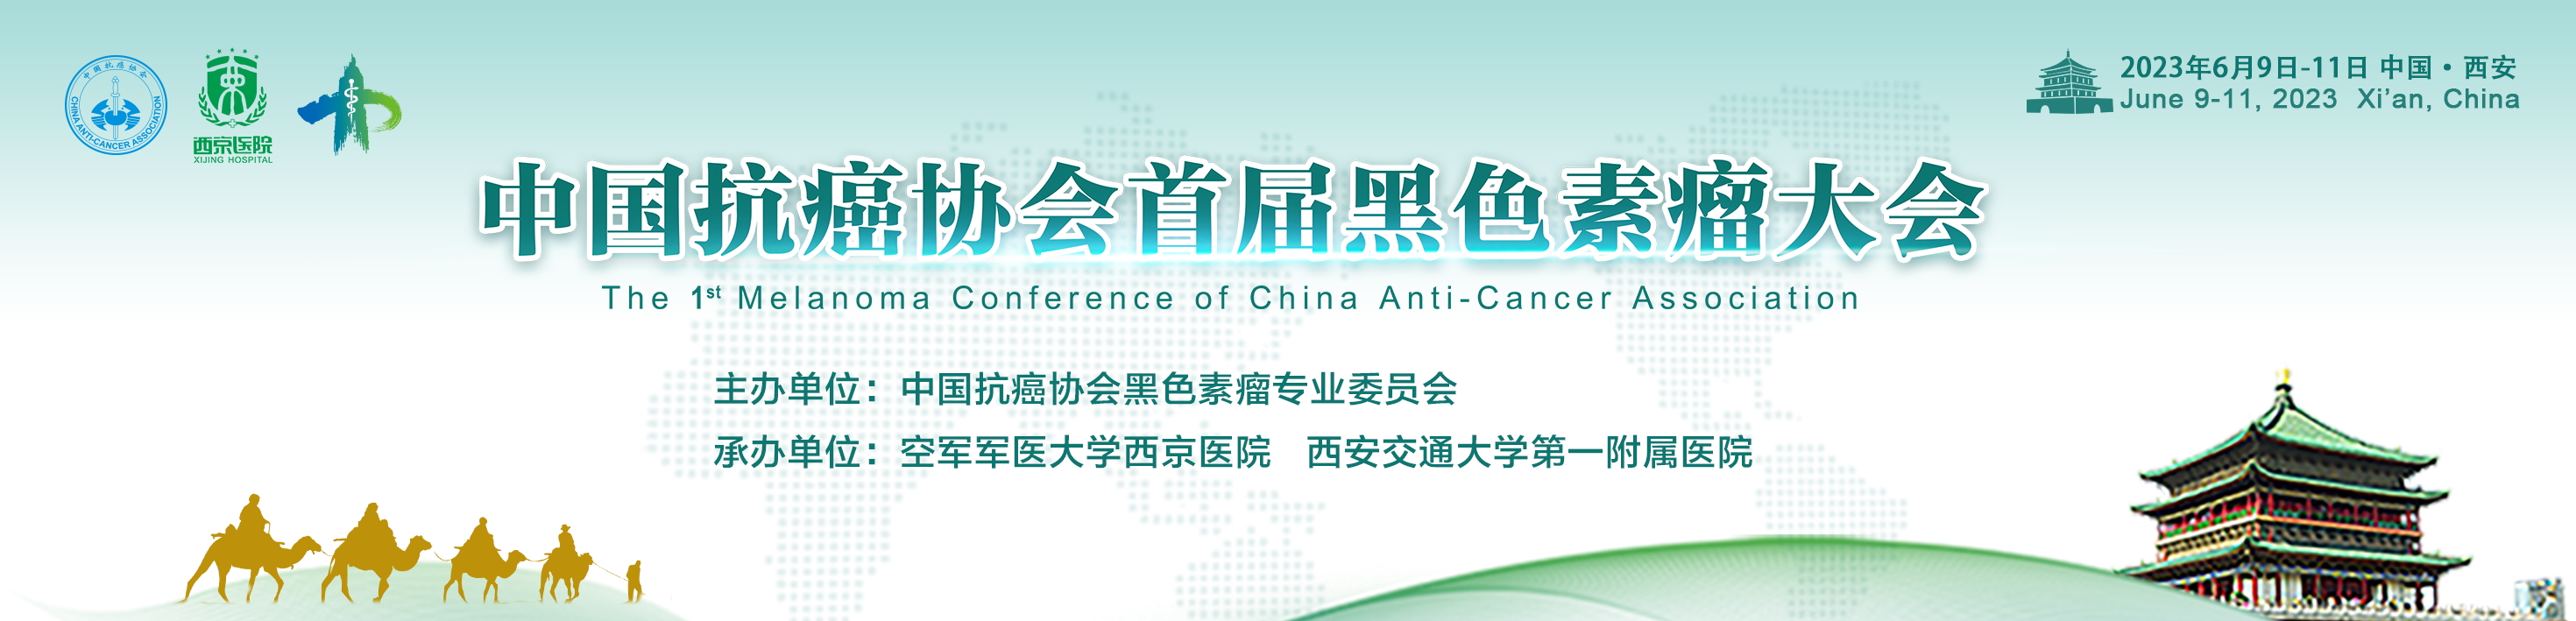 中国抗癌协会首届黑色素瘤大会